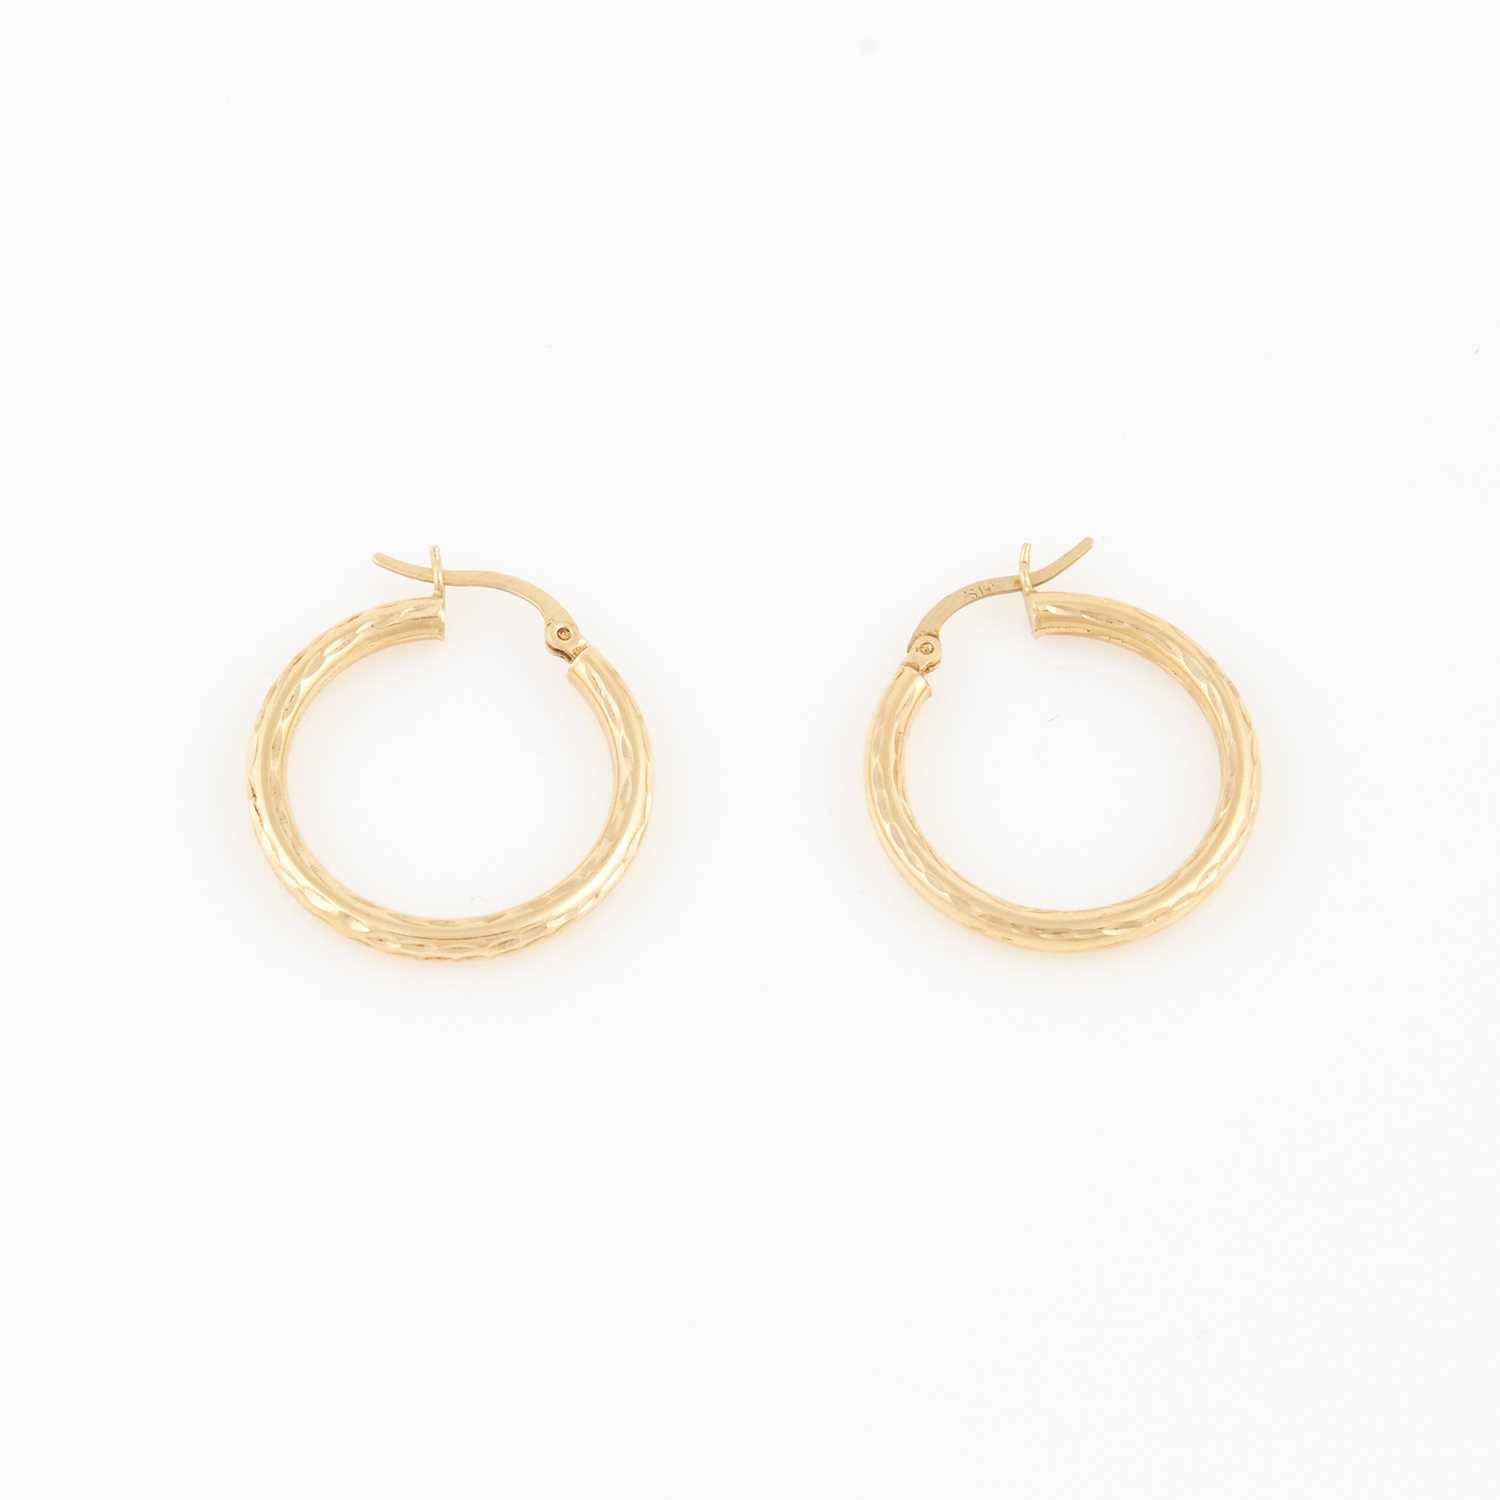 Lot 76 - Two Gold Earrings, 14K 1 dwt.